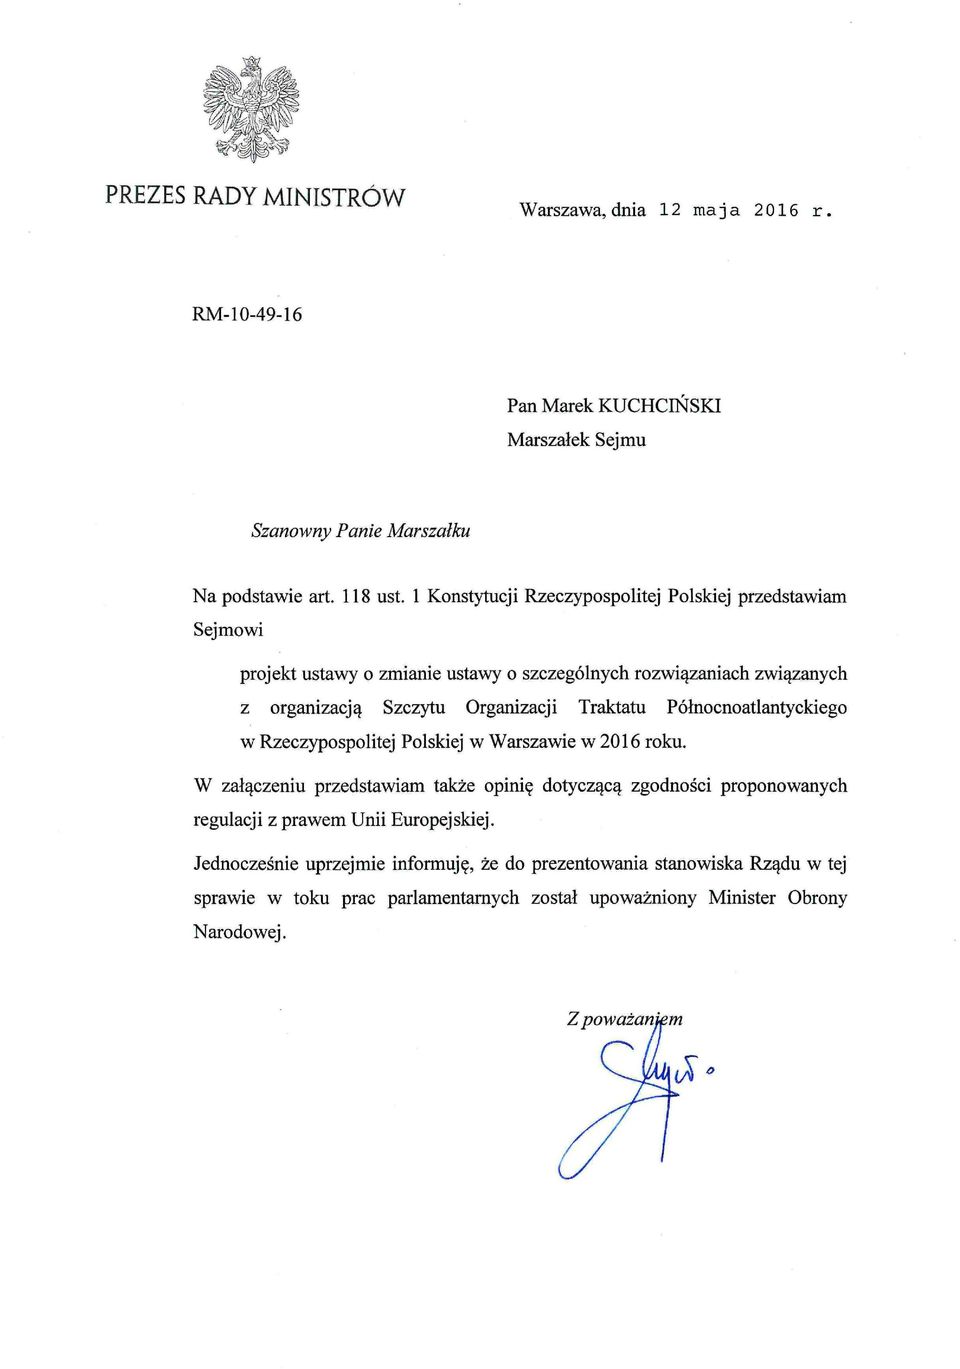 Traktatu Północnoatlantyckiego w Rzeczypospolitej Polskiej w Warszawie w 2016 roku.